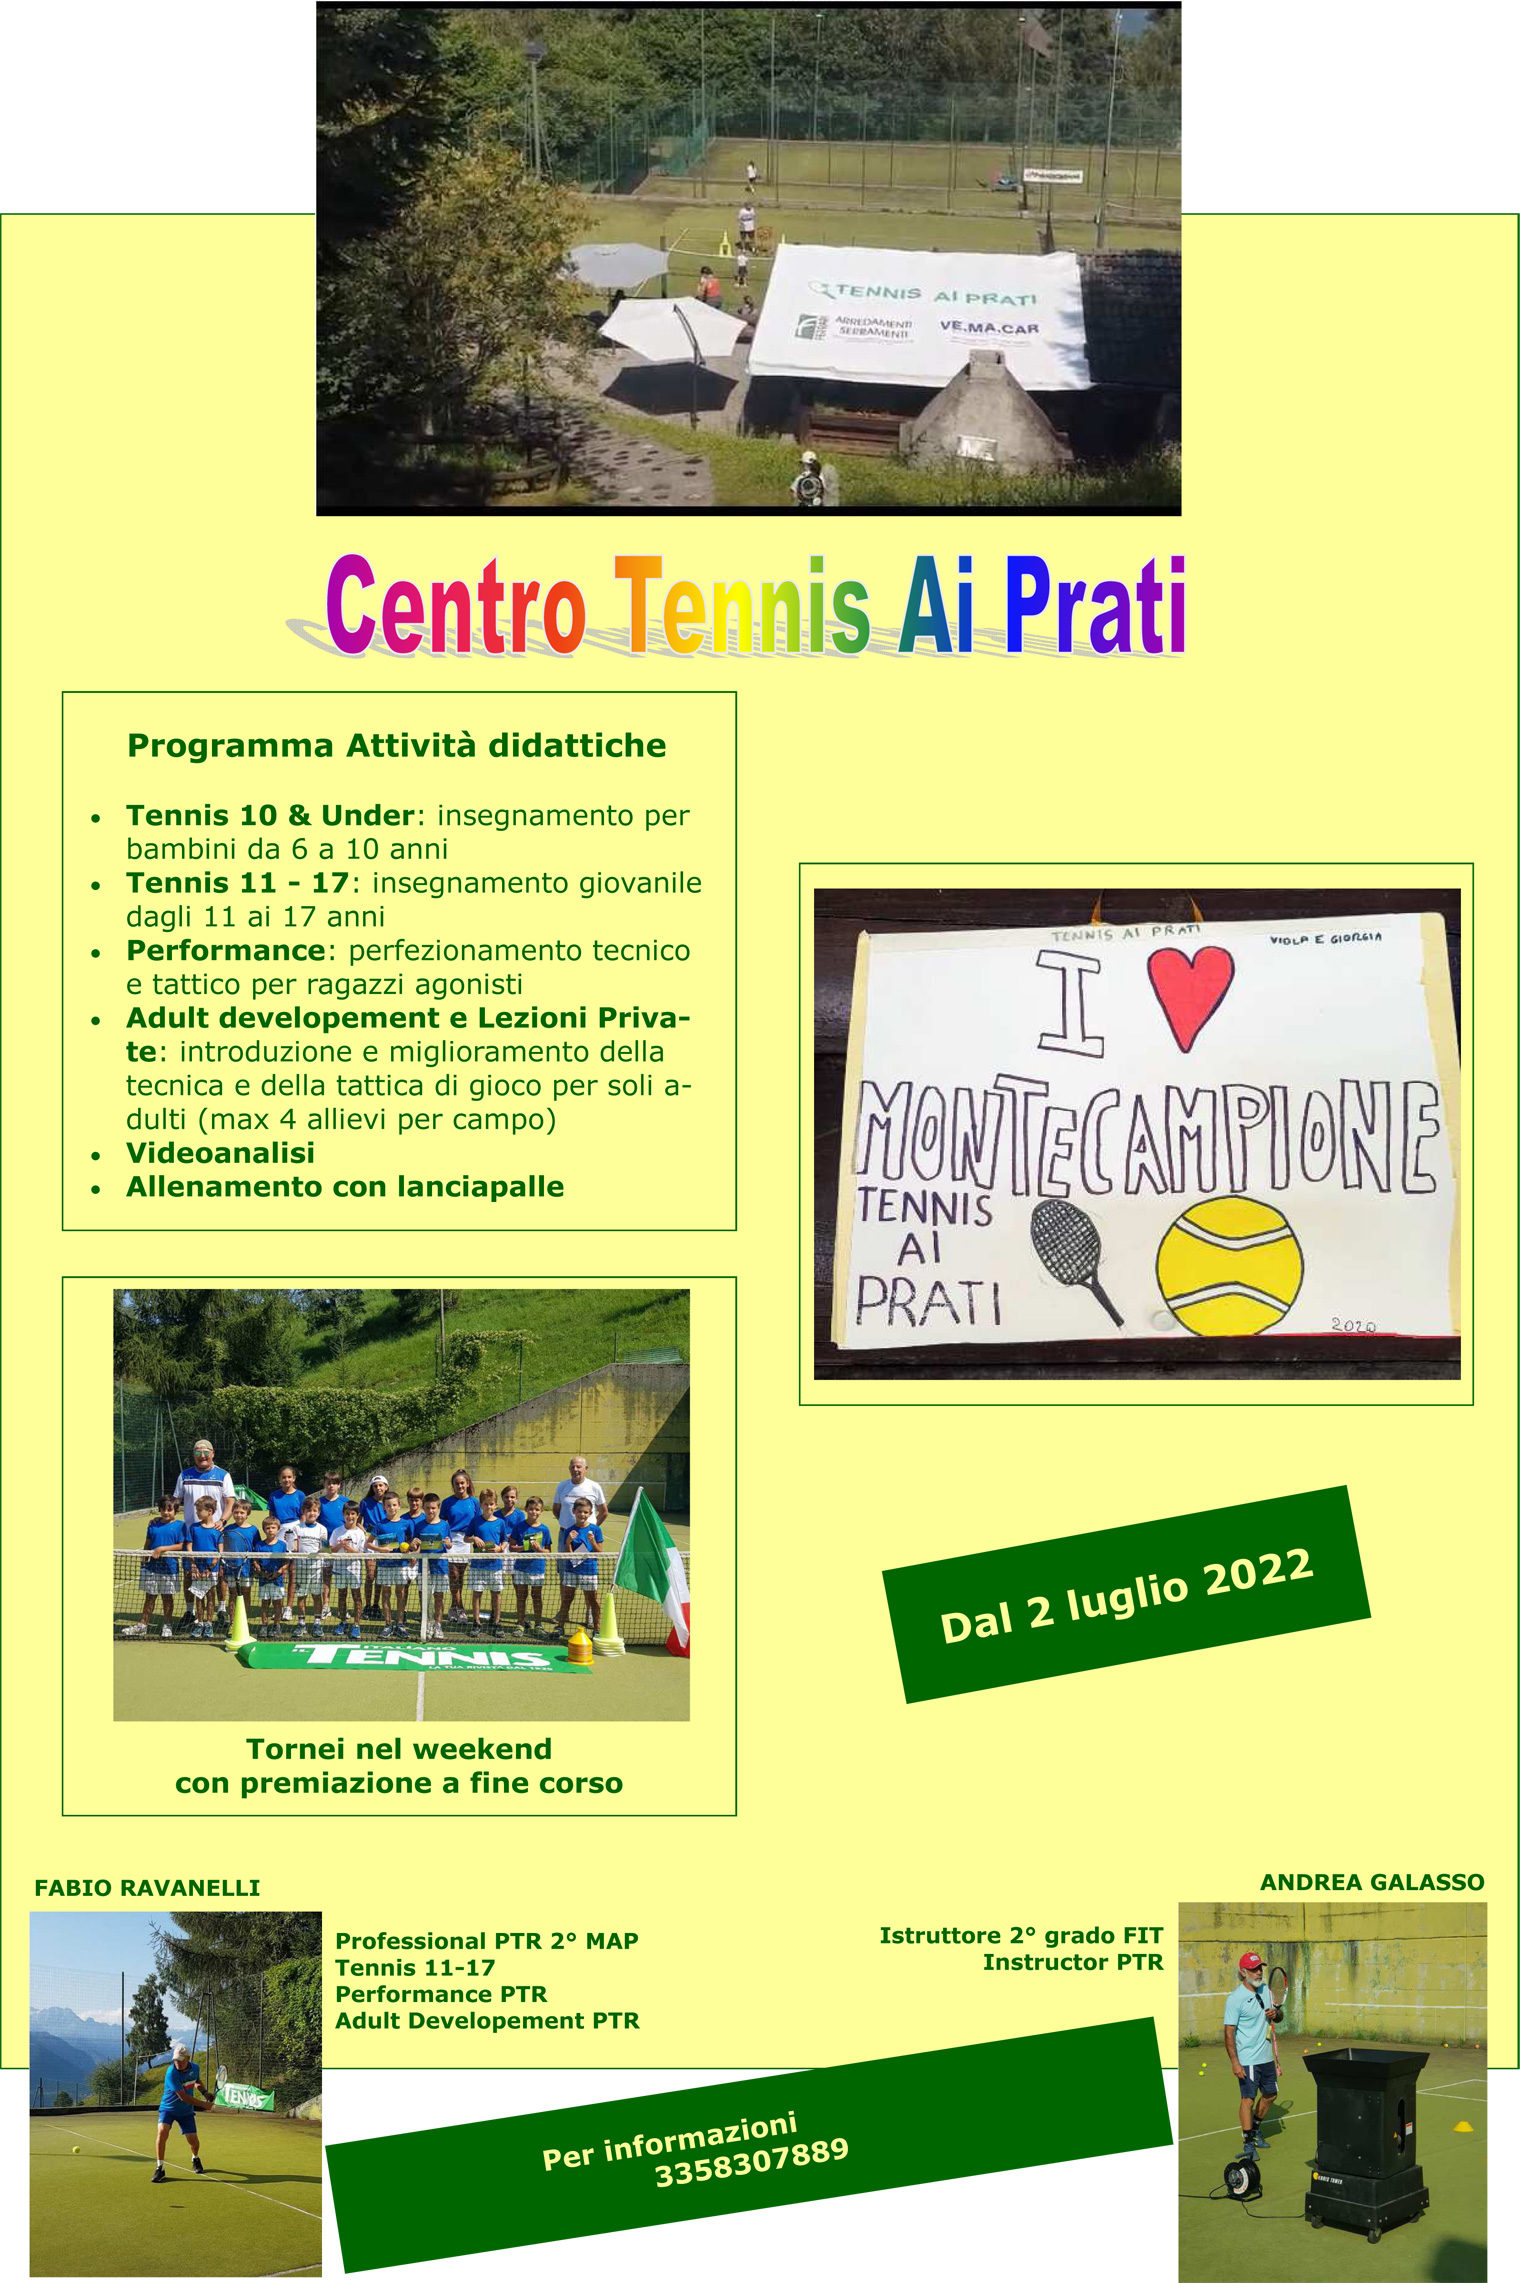 A Montecampione, dal 2 luglio riapre il Centro Tennis Ai Prati